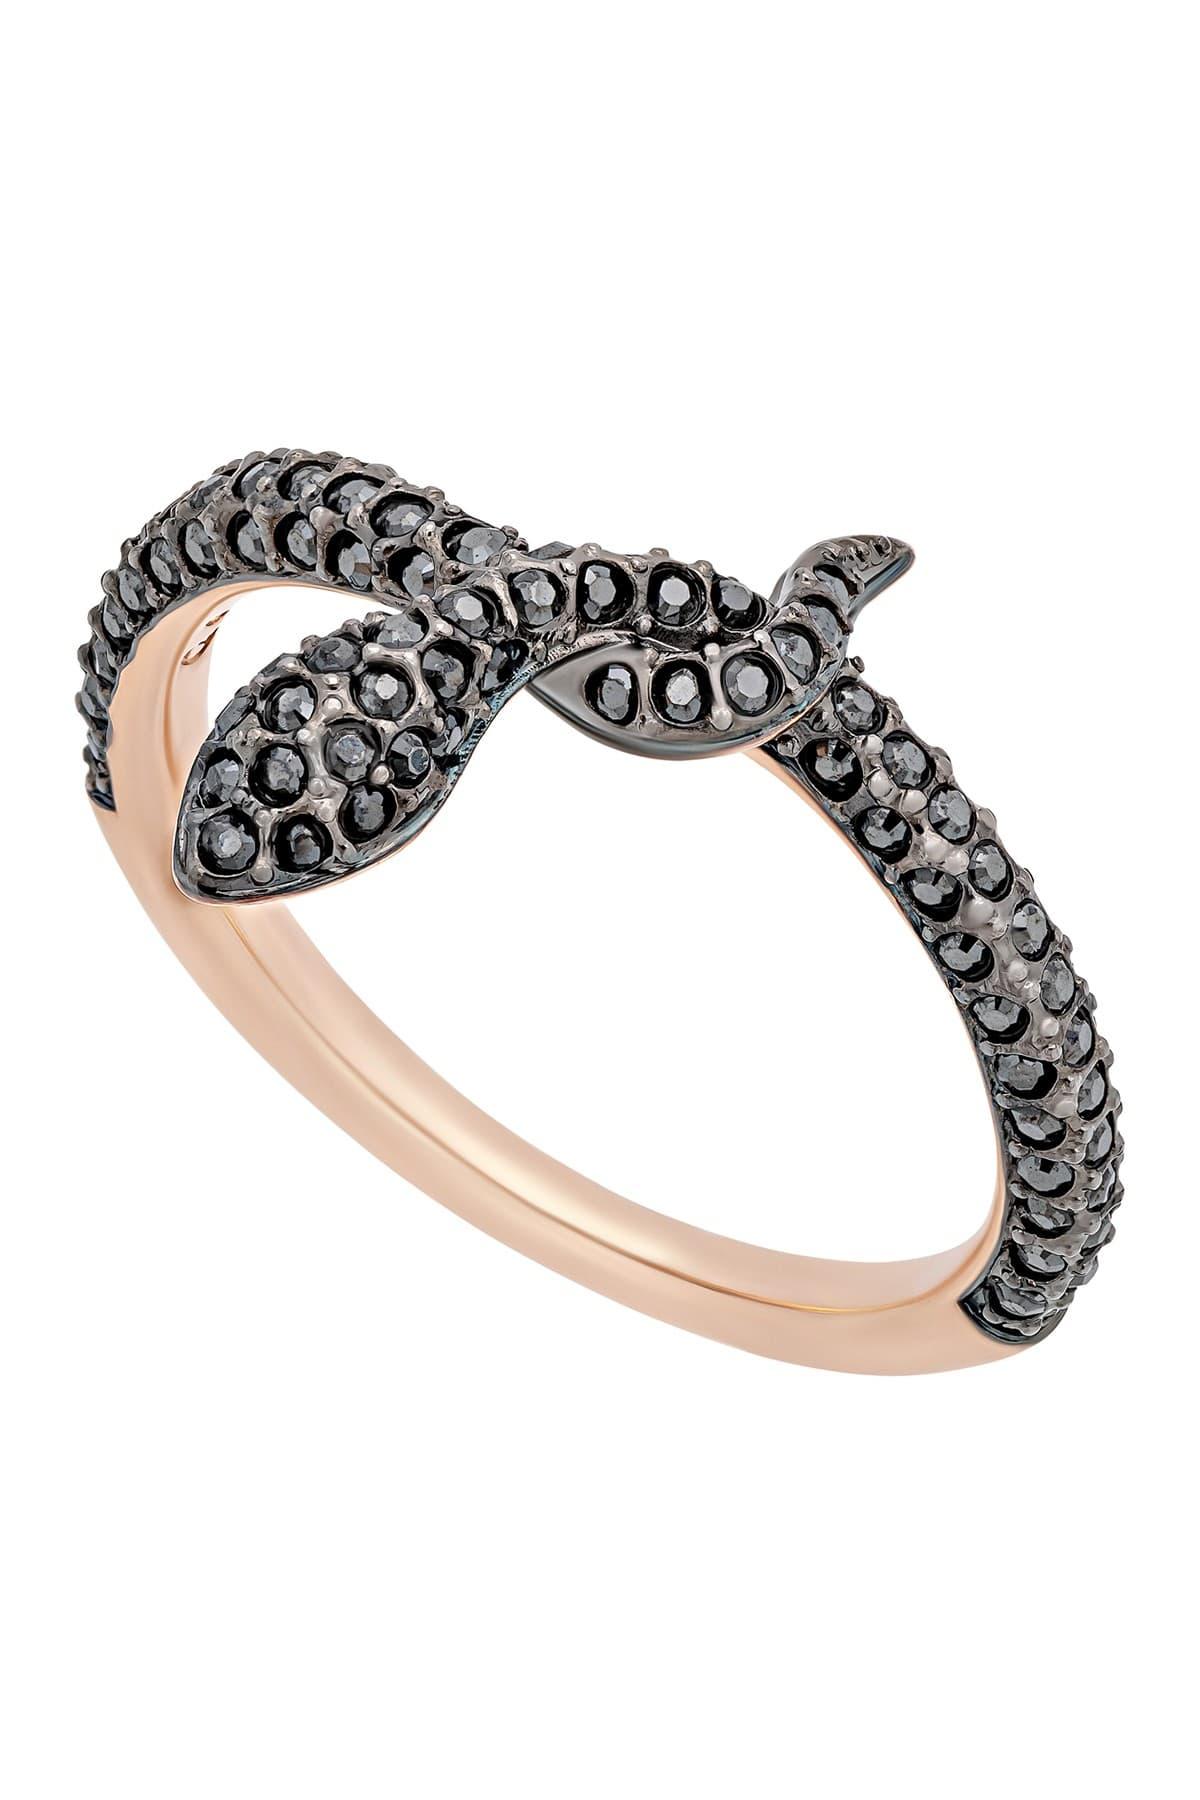 Swarovski Leslie 18k Rose Gold Plated Black Crystal Snake Ring - Size 8 -  Lyst